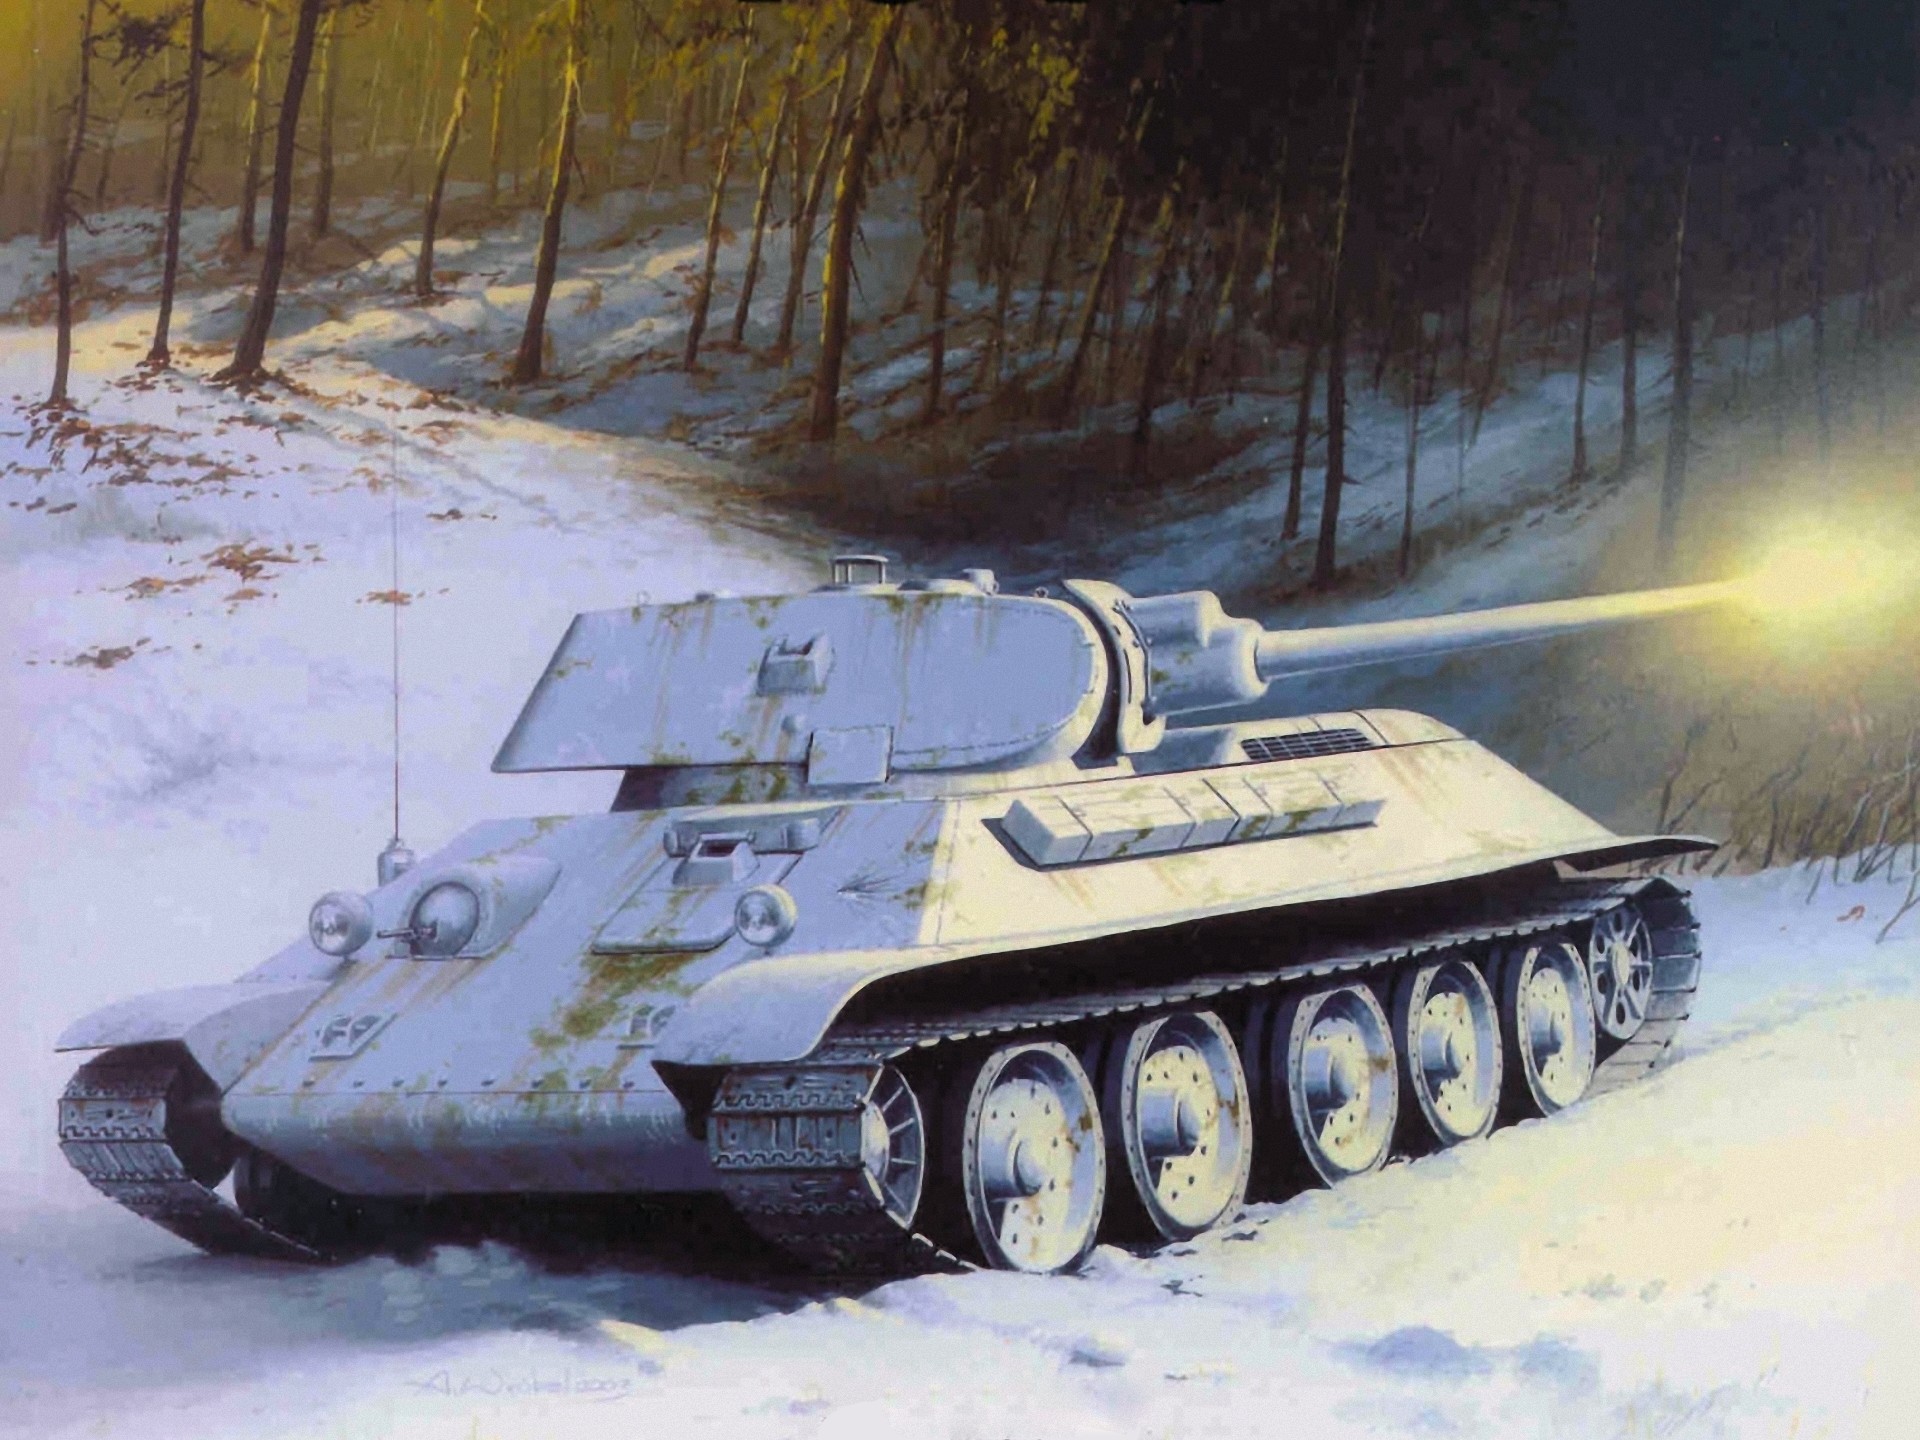 Russian T-34